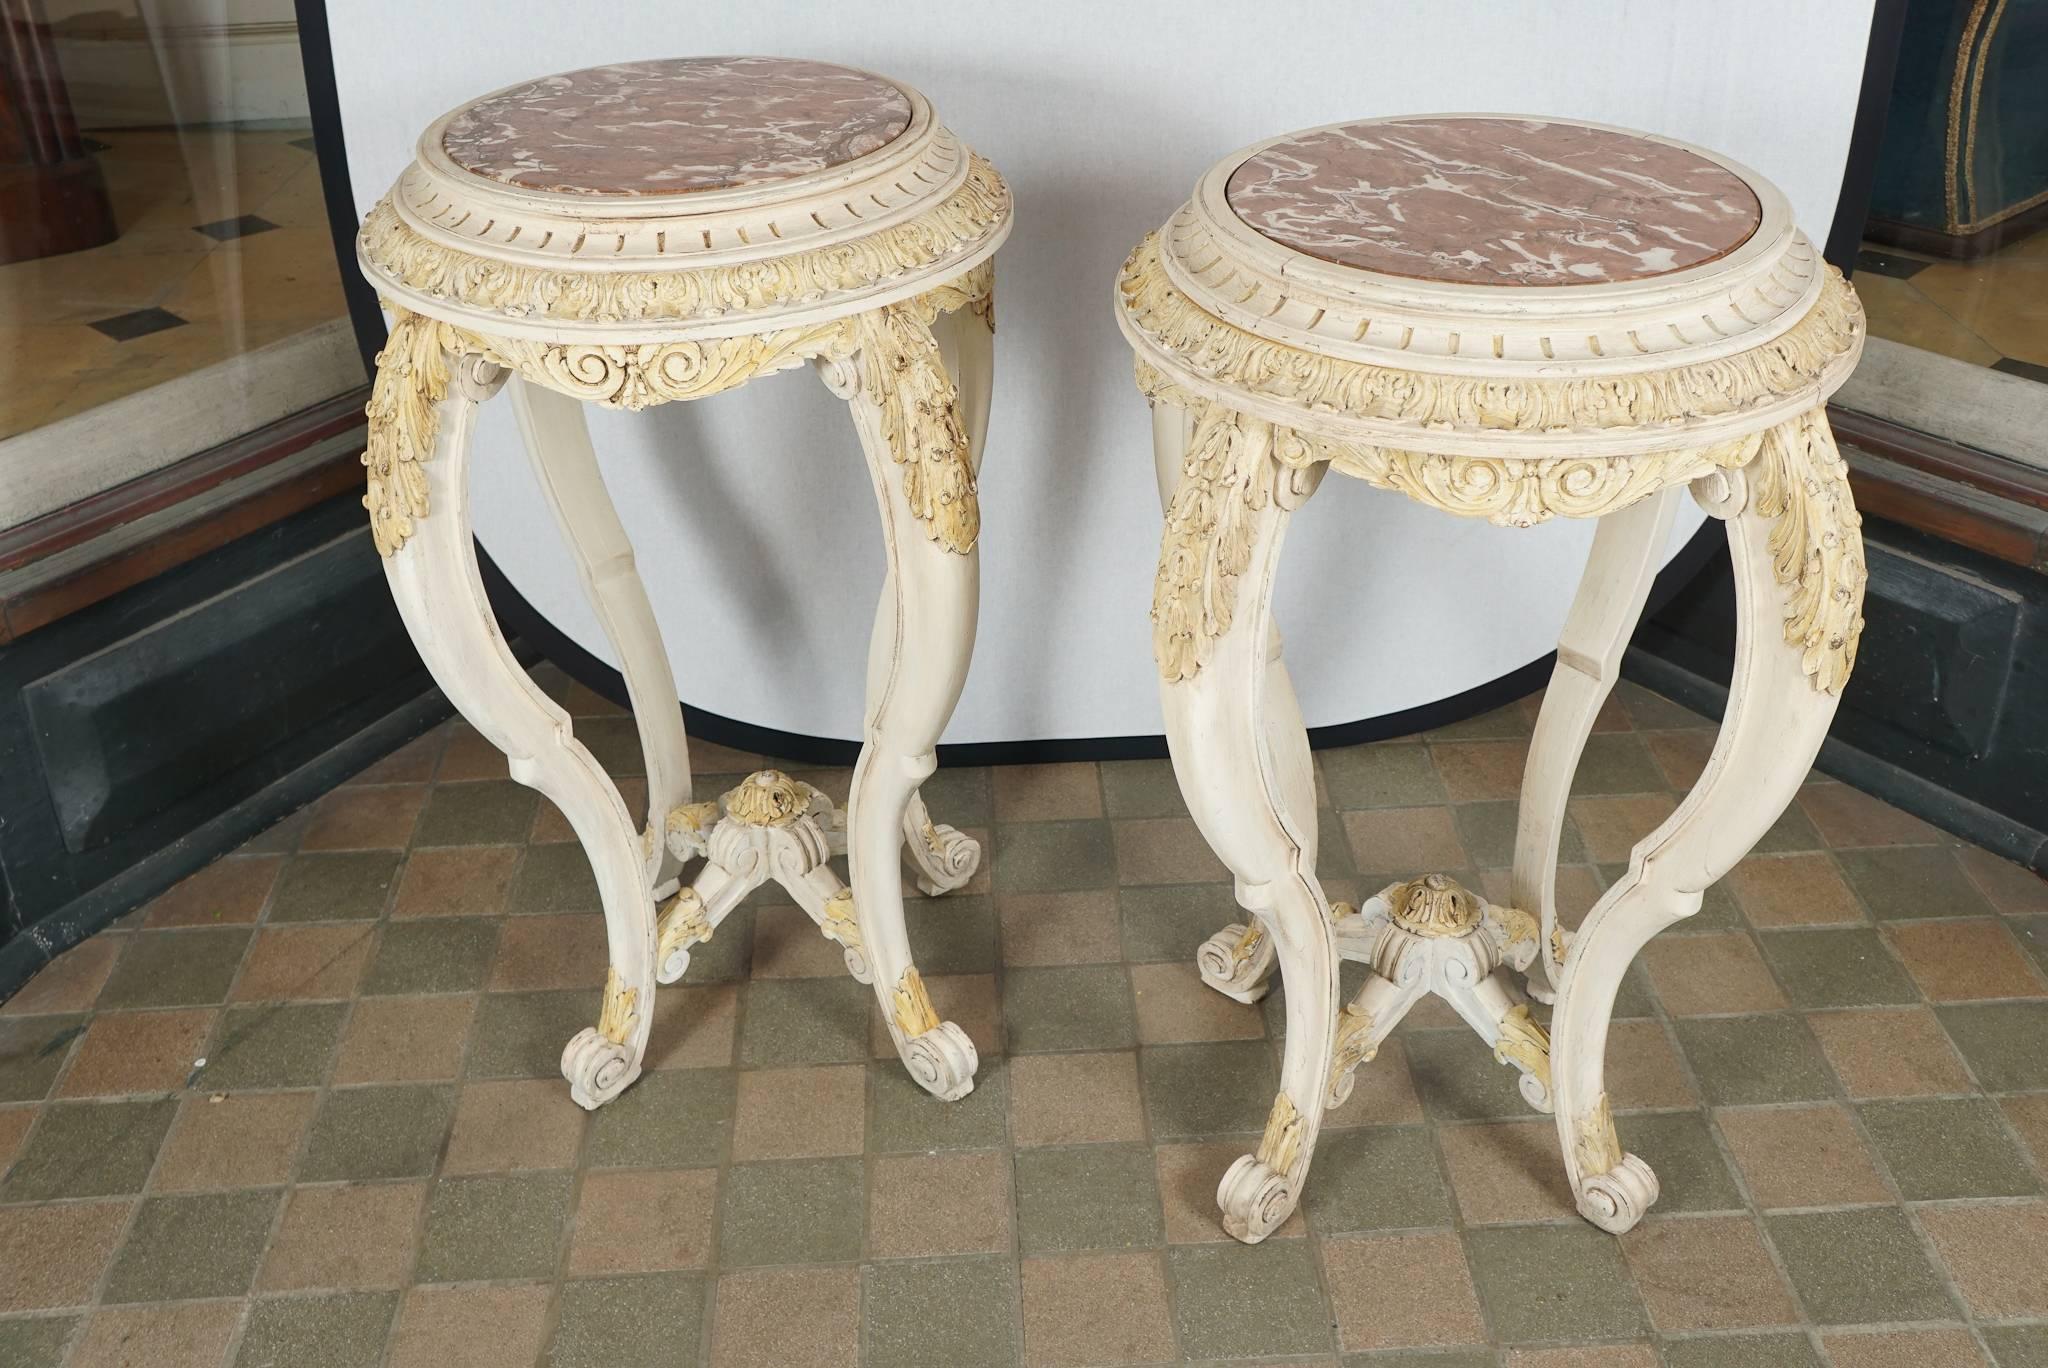 Cette paire de tables a été fabriquée en France entre 1890 et 1900. Conçue dans le style Louis XV, la paire présente de nombreux éléments décoratifs sculptés à la main, notamment des feuilles d'acanthe, des cannelures et des rosettes, le tout se